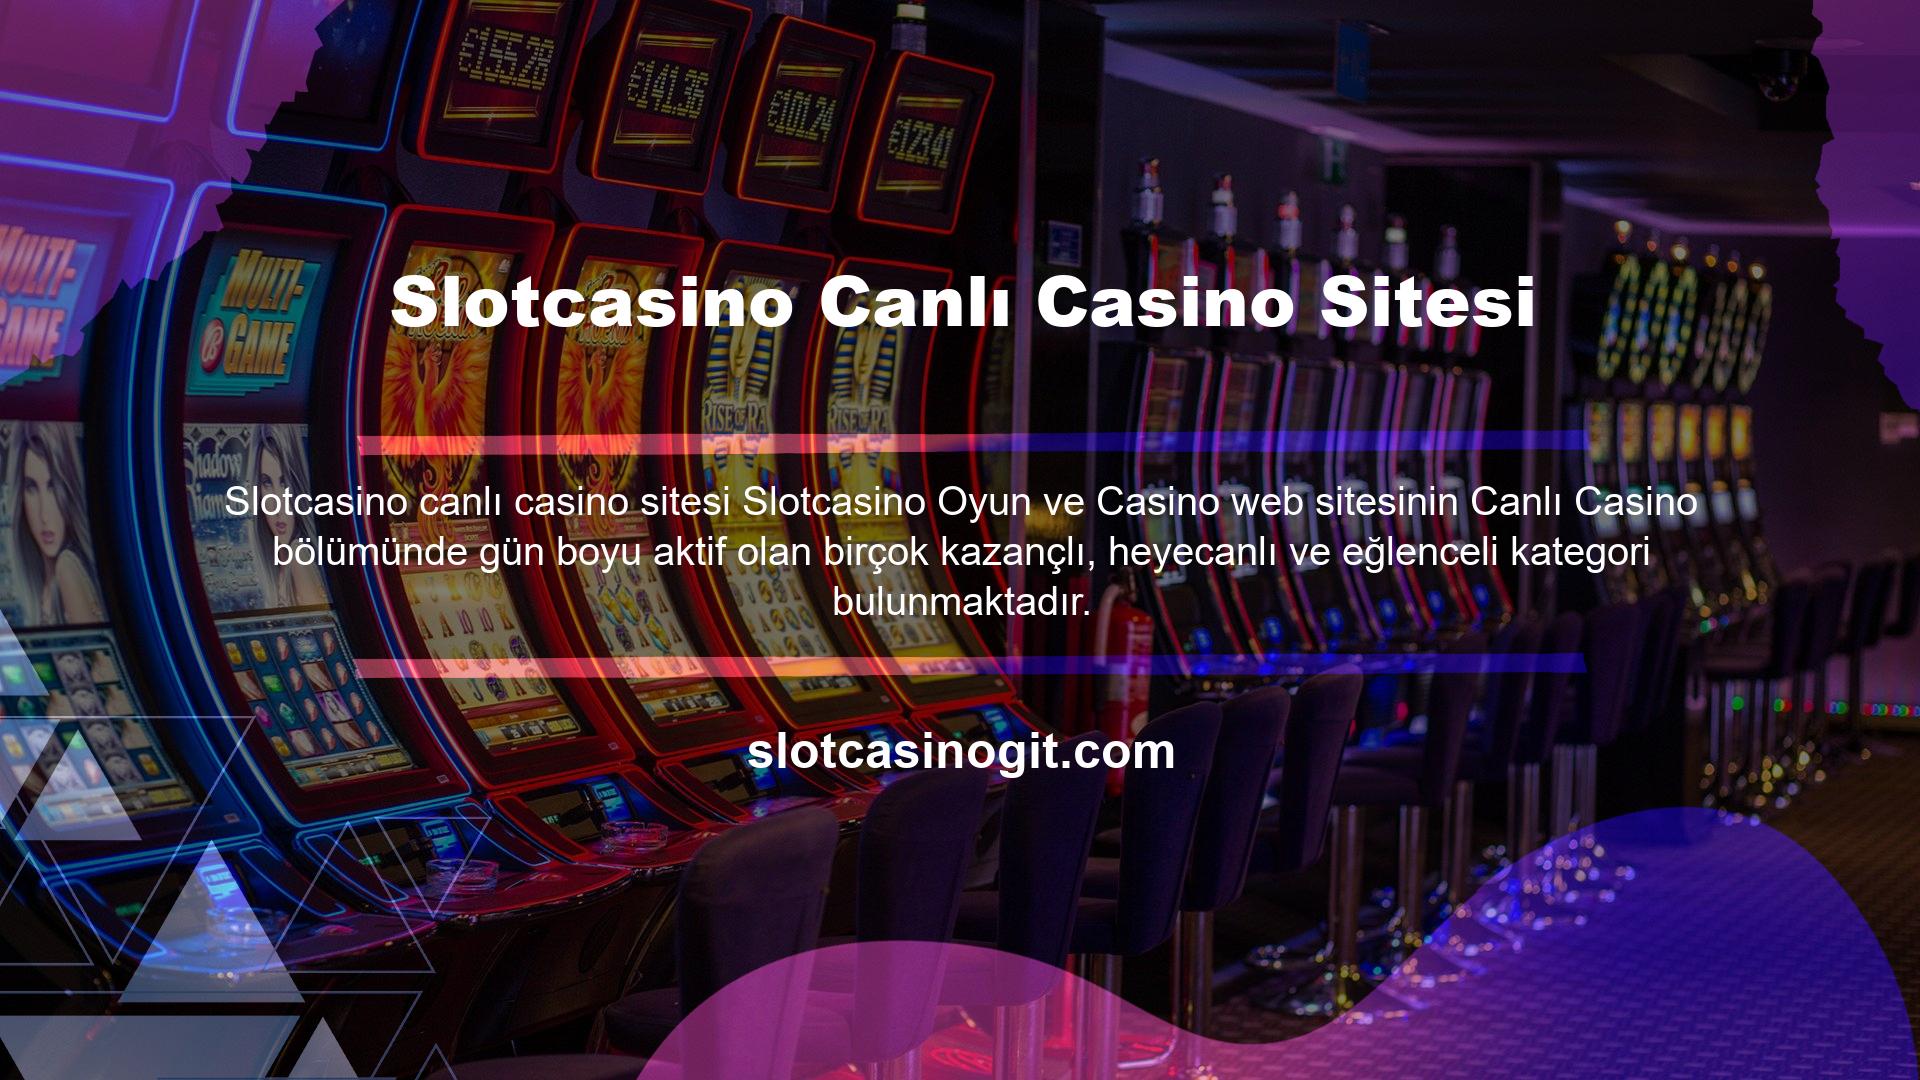 Lisanslı bir oyun sitesi olarak tüm canlı casino oyunları, canlı casino shooter'ları ve canlı casino lobileri 7/24 izlenmektedir